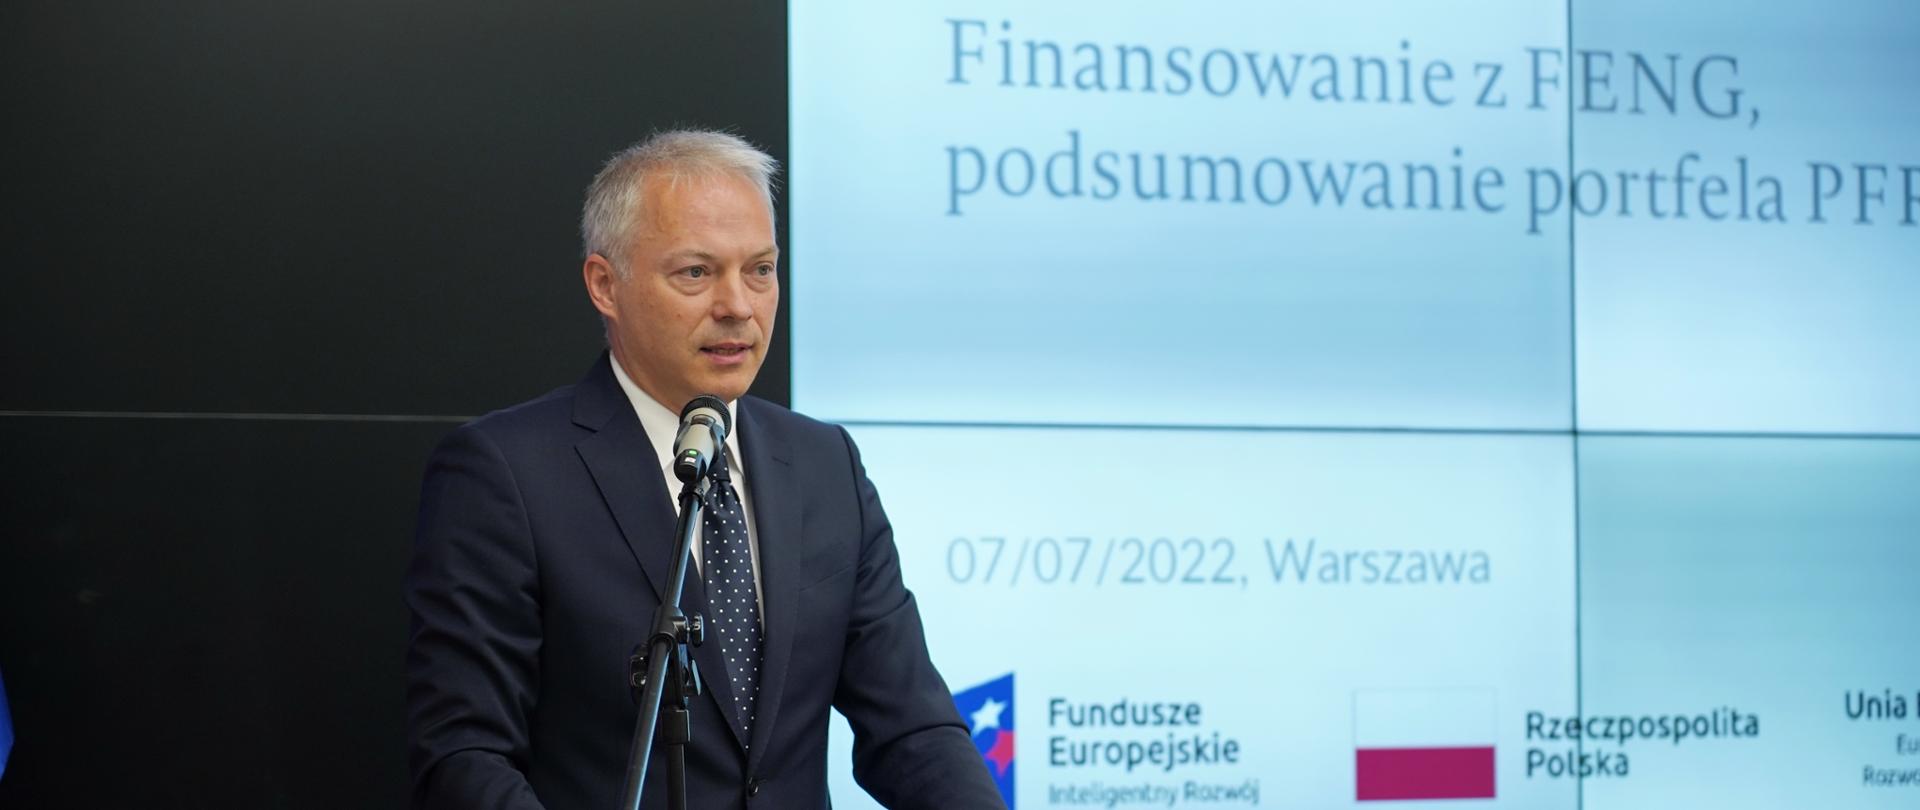 3,2 mld zł na finansowanie start-upów w programie Fundusze Europejskie dla Nowoczesnej Gospodarki
Wiceminister Jacek Żalek podczas wystąpienia na konferencji